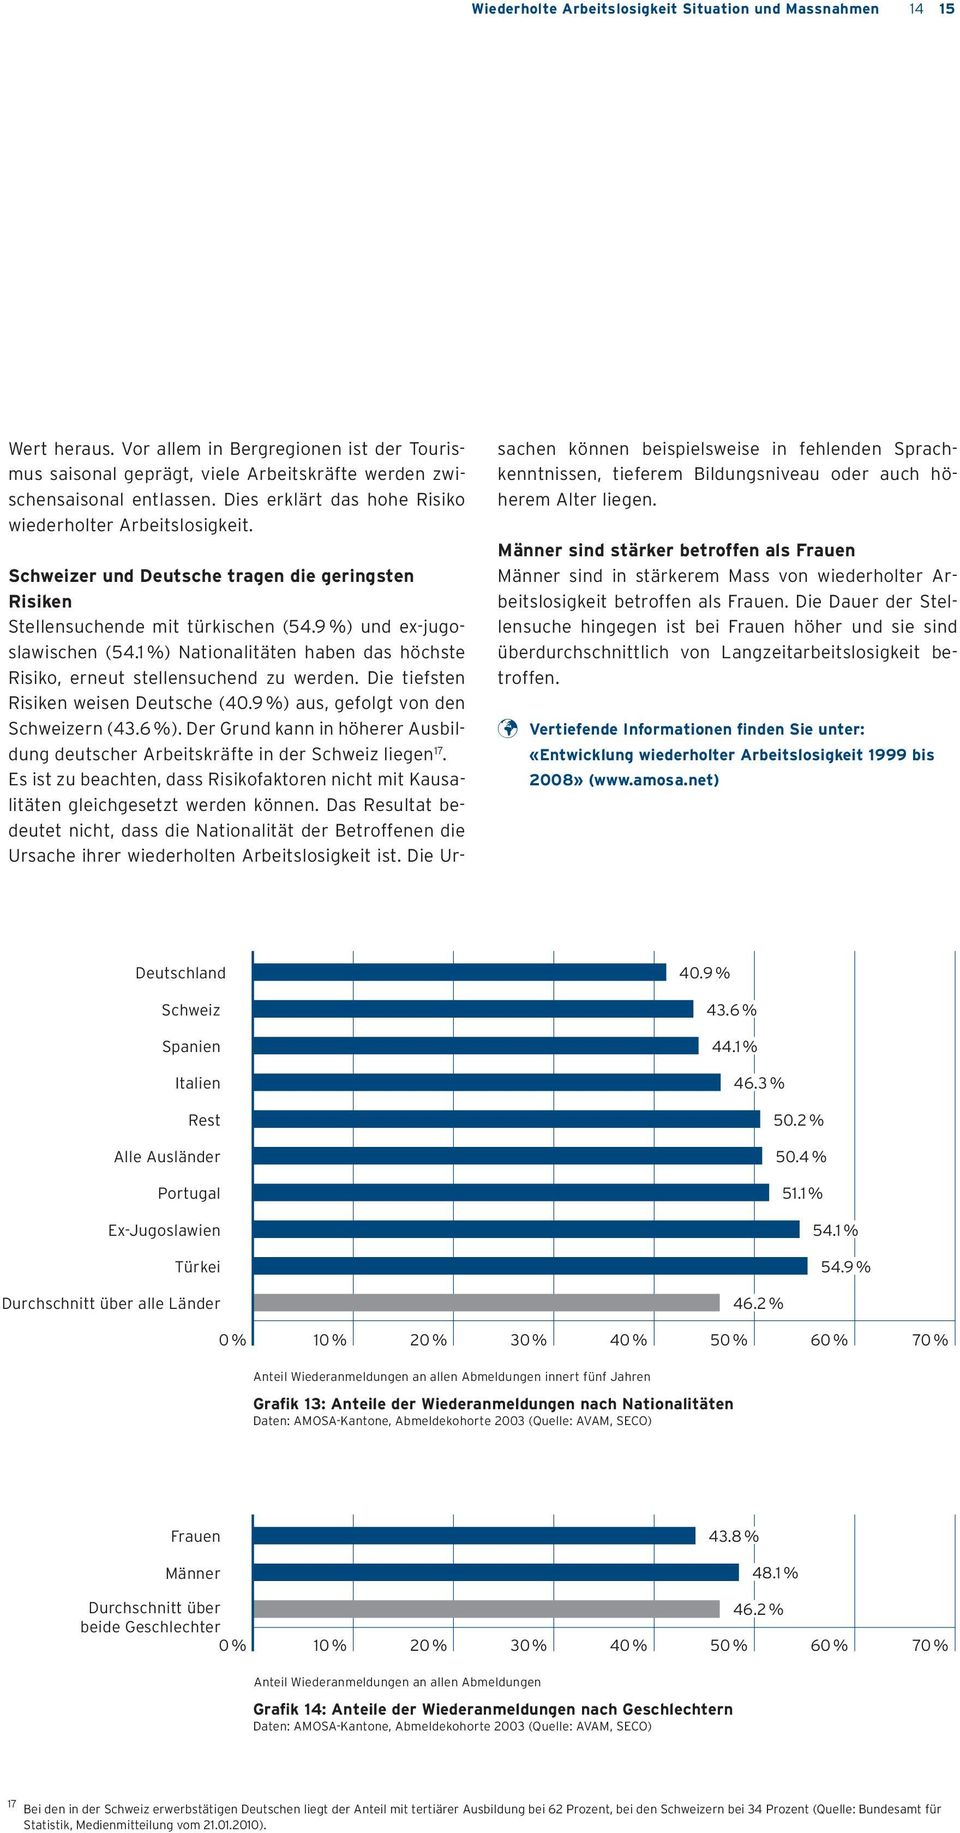 1 %) Nationalitäten haben das höchste Risiko, erneut stellensuchend zu werden. Die tiefsten Risiken weisen Deutsche (40.9 %) aus, gefolgt von den Schweizern (43.6 %).